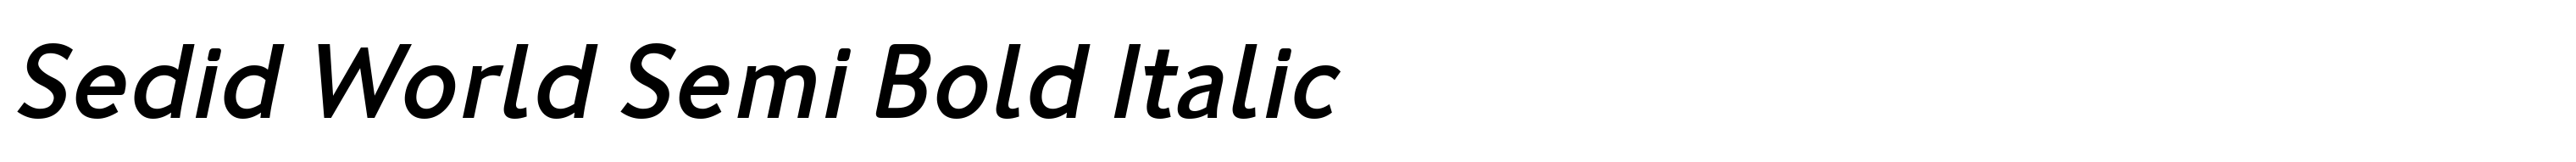 Sedid World Semi Bold Italic